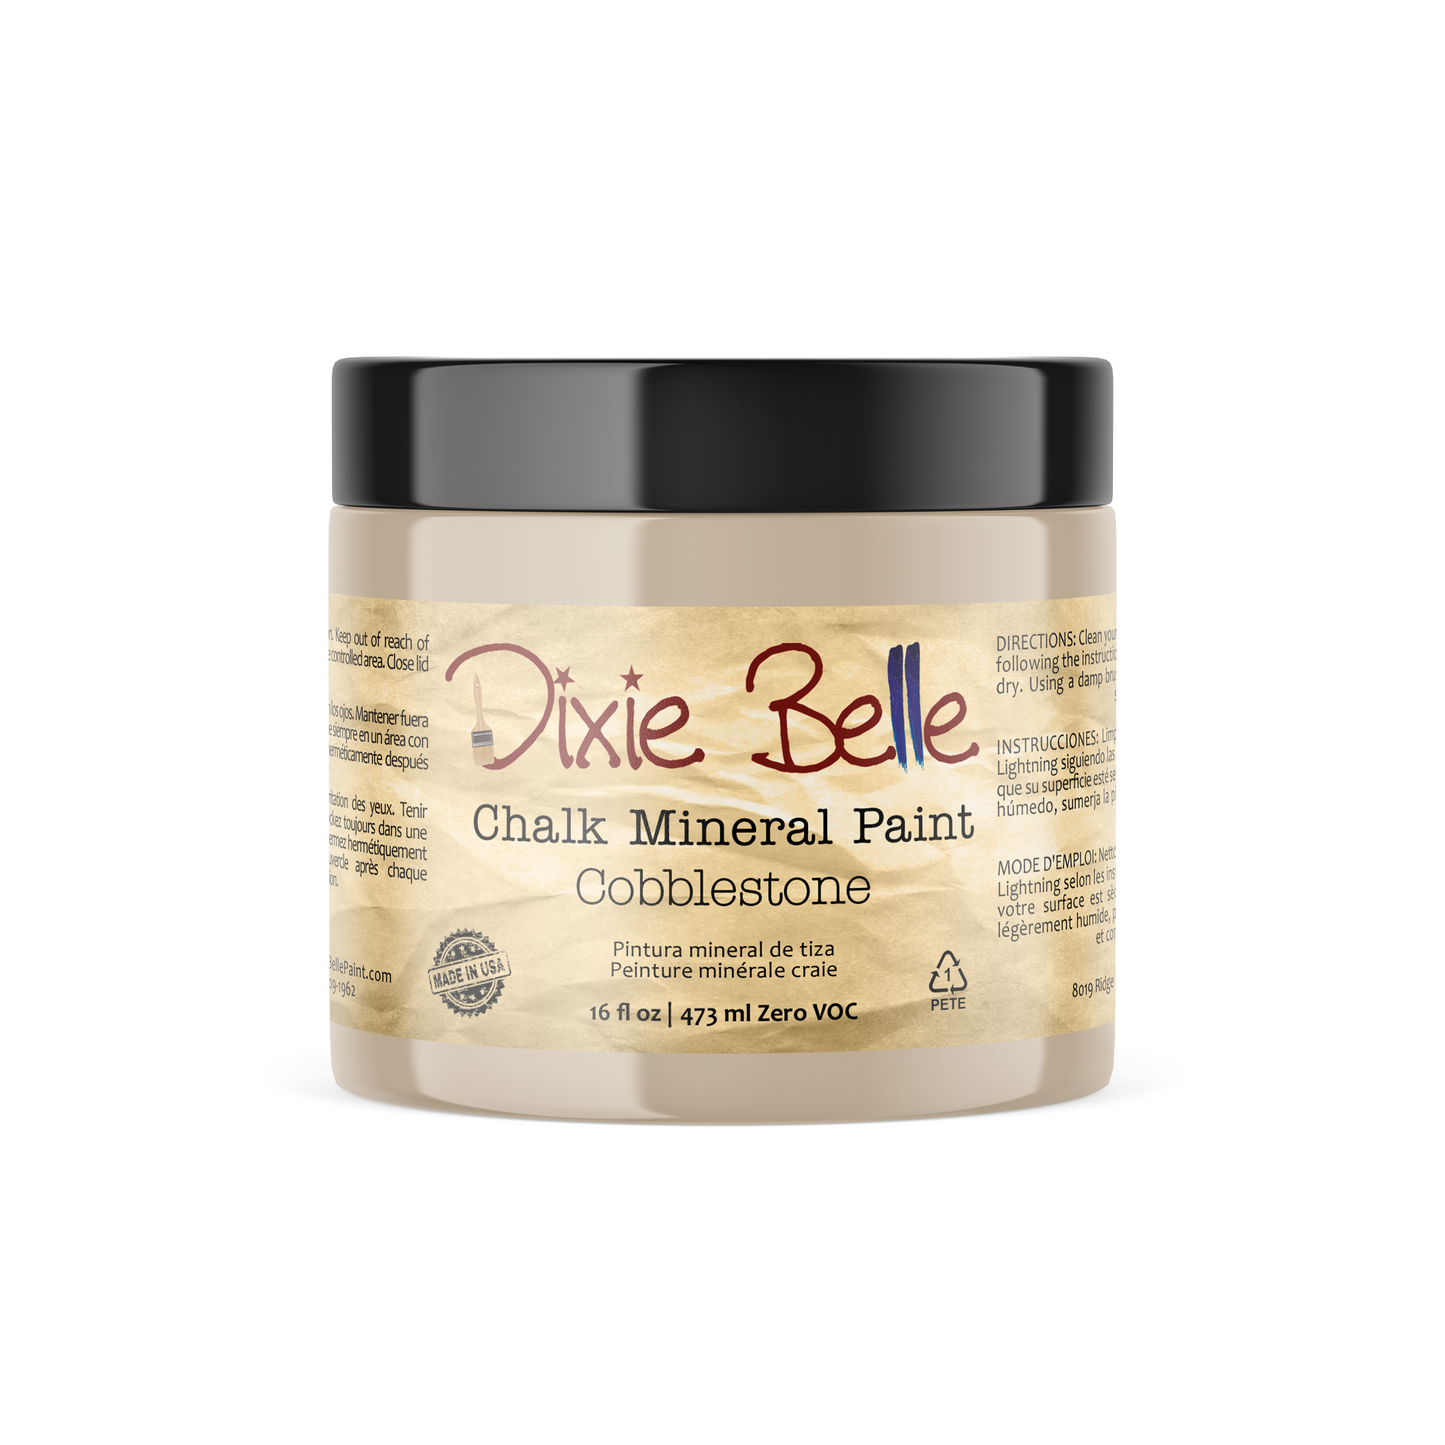 NEW - Cobblestone - Dixie Belle Chalk Mineral Paint